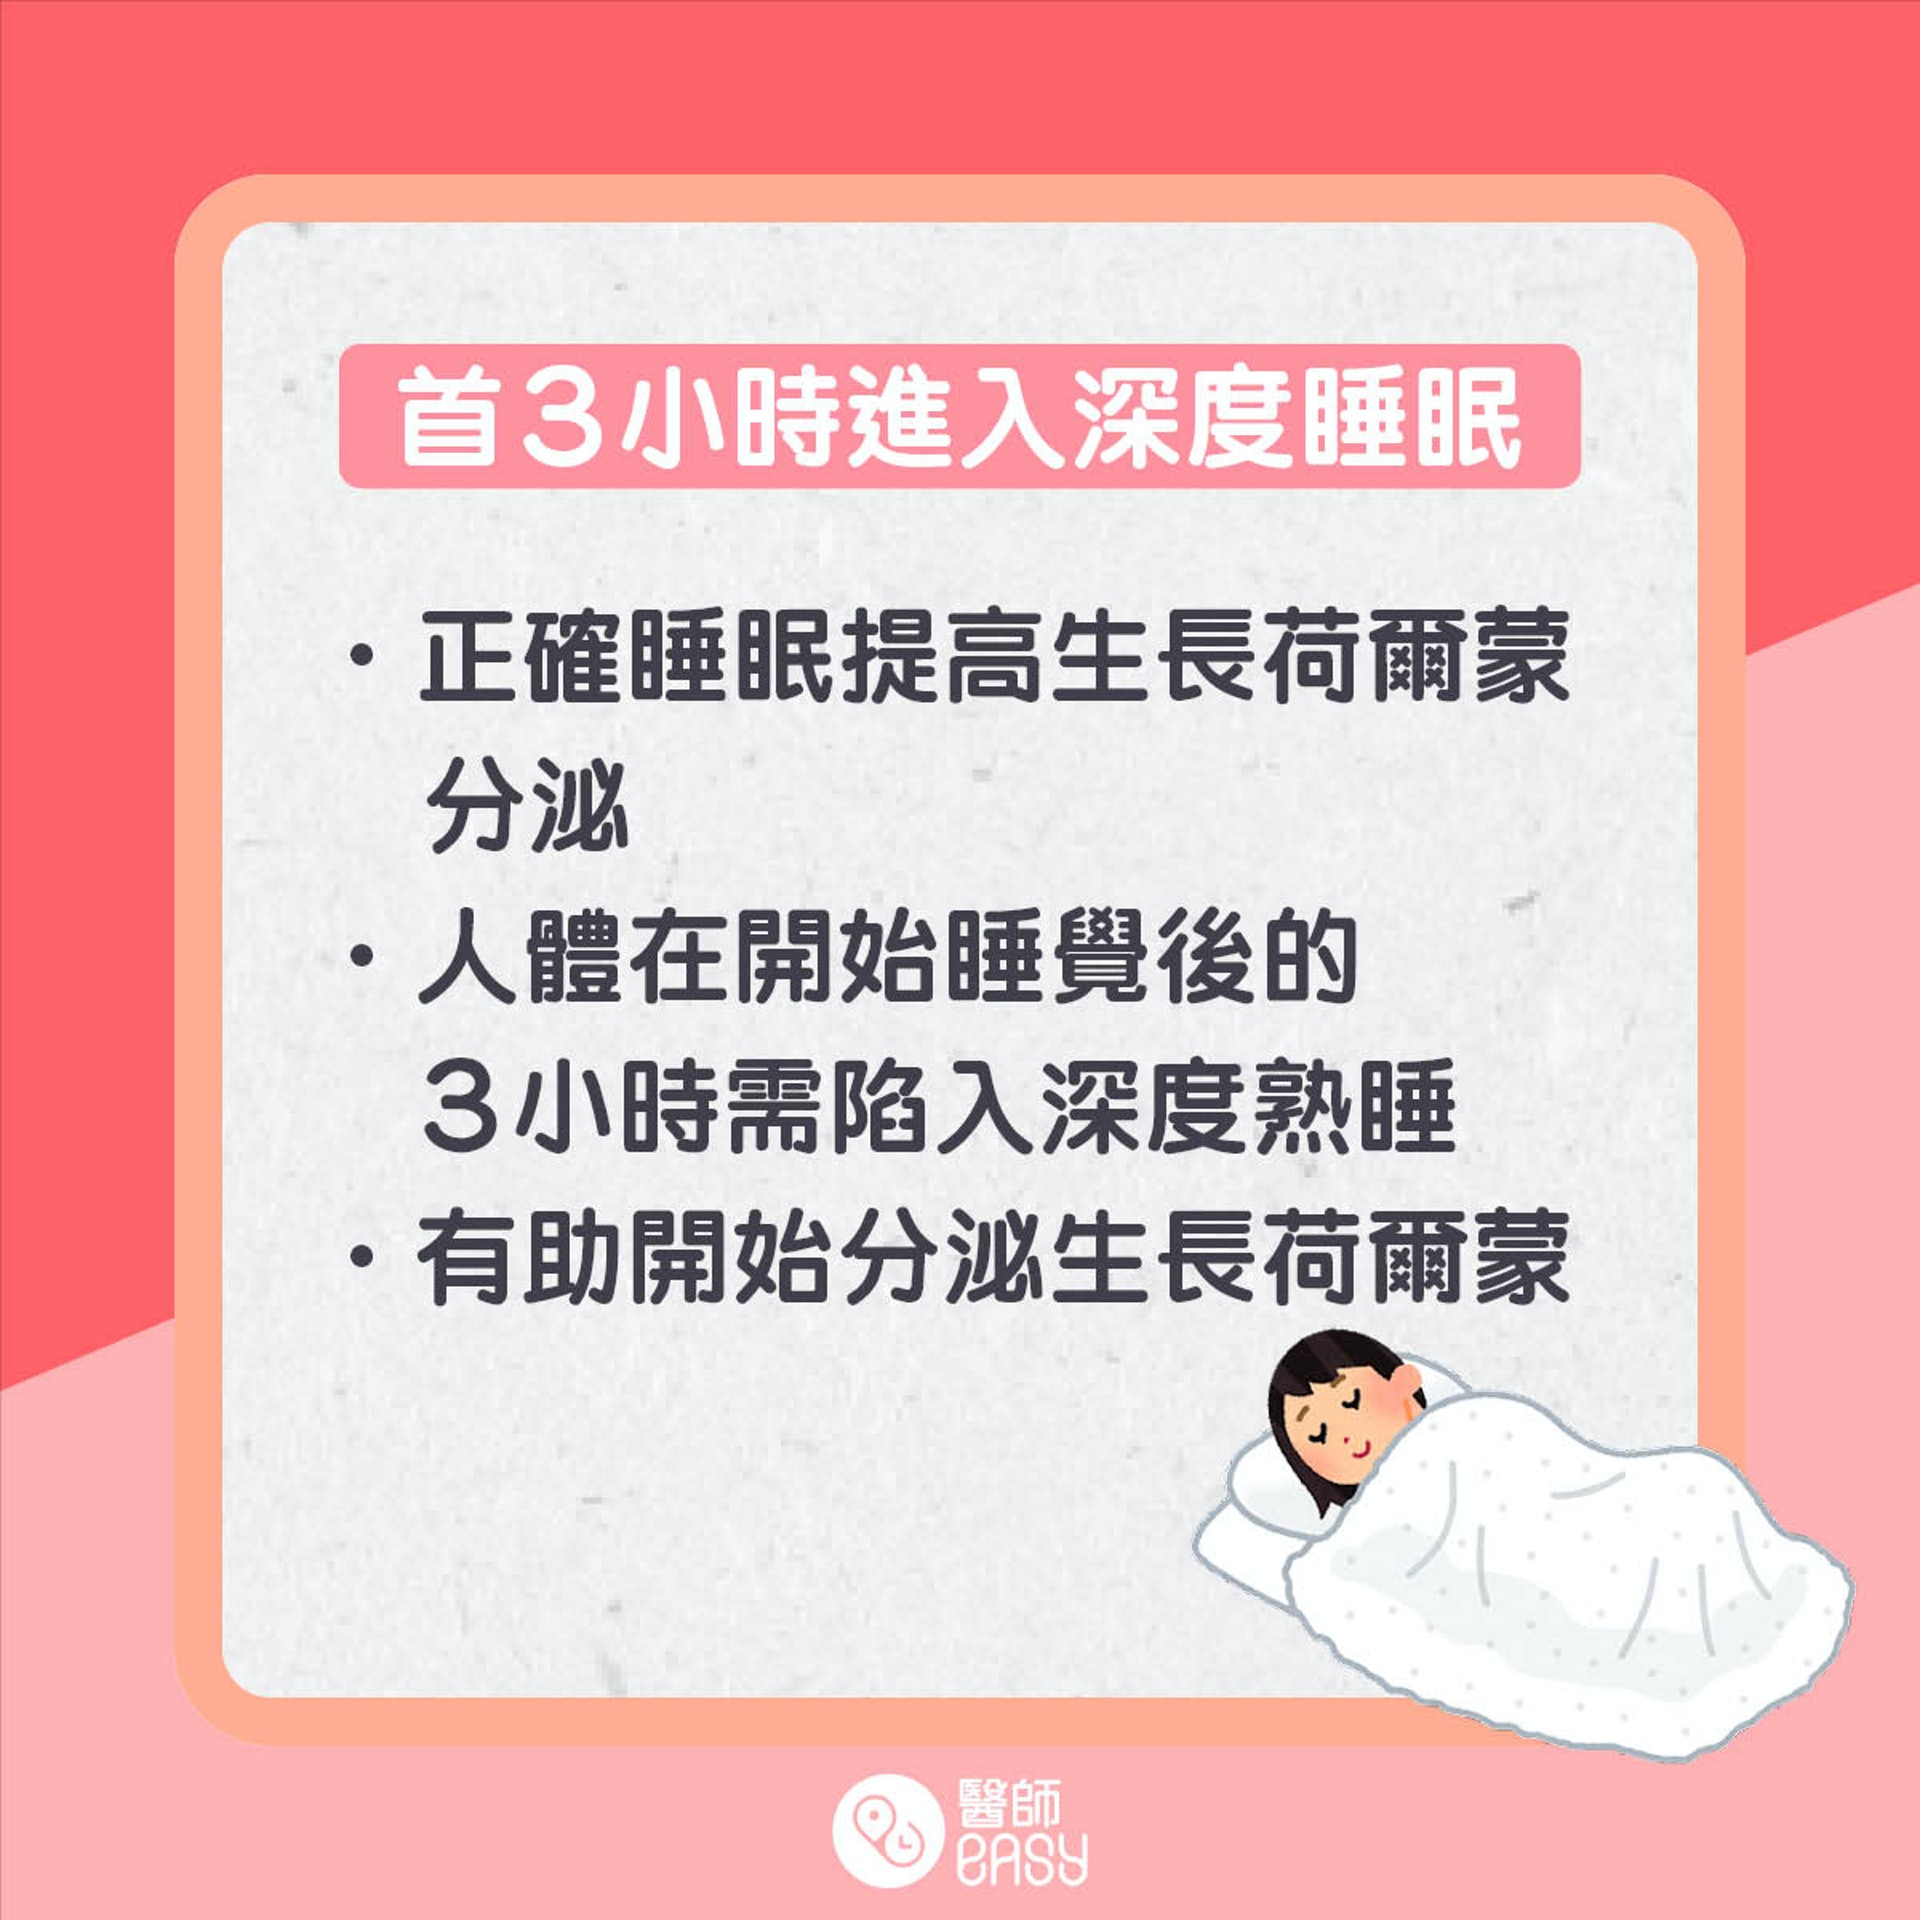 3・3・7睡眠法則是甚麼？（01製圖）